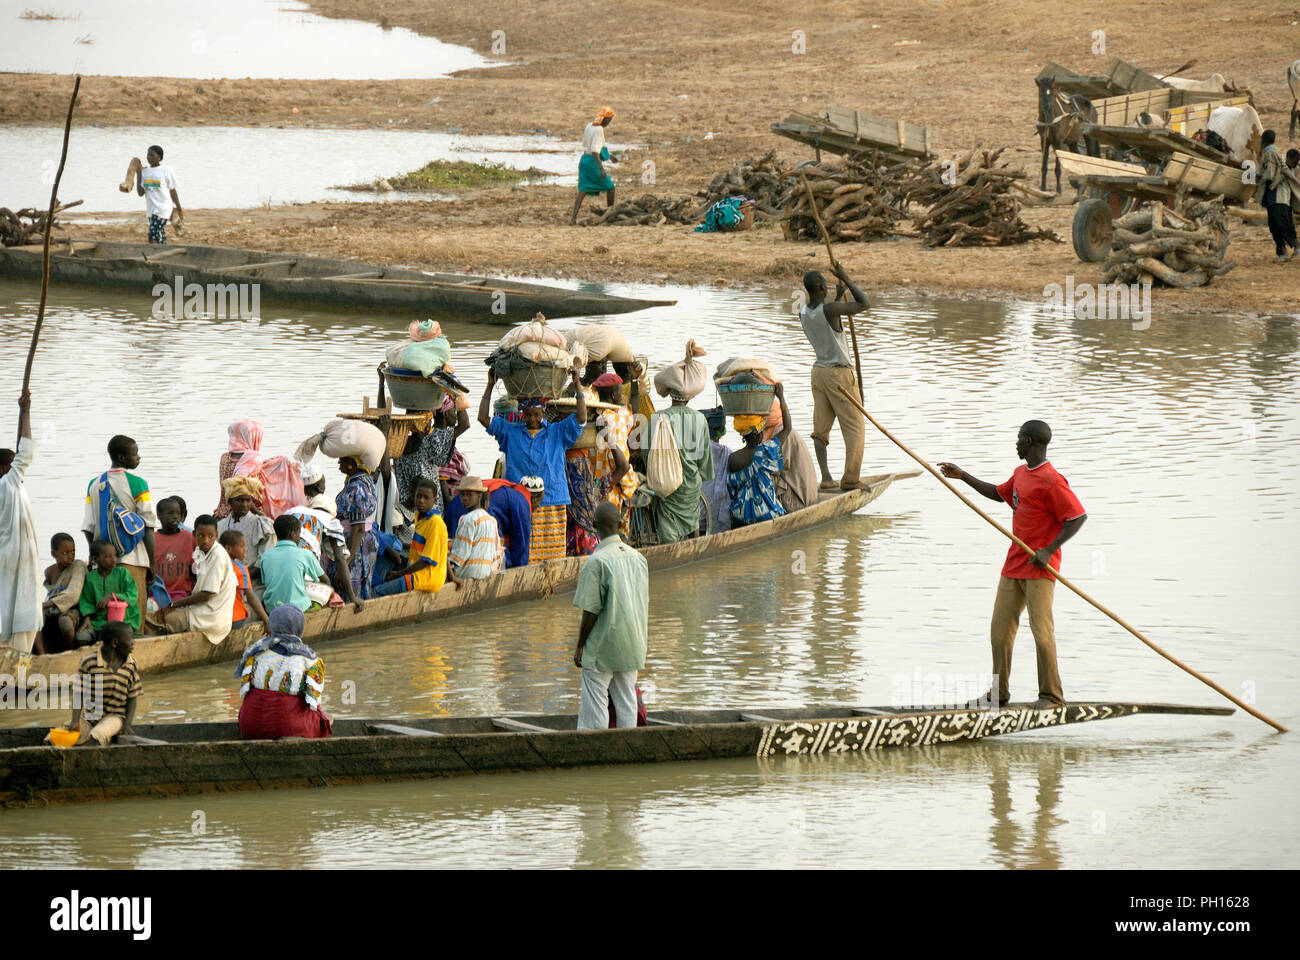 Le passage de la rivière Bani sur le marché hebdomadaire, journée lundi. Djenné, Site du patrimoine mondial de l'Unesco. Le Mali, Afrique de l'Ouest Banque D'Images